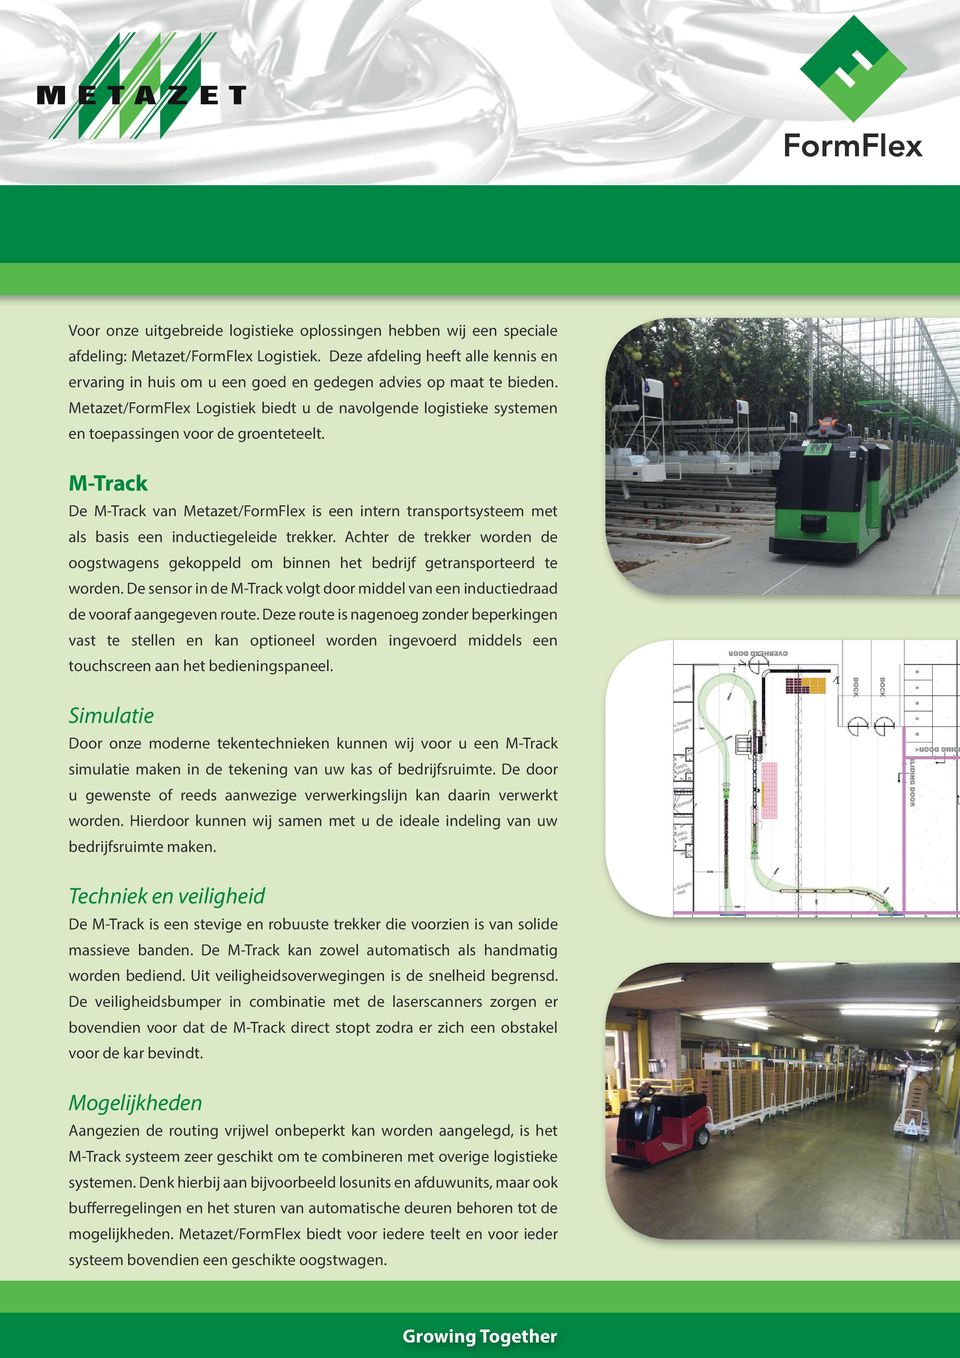 Metazet/FormFlex Logistiek biedt u de navolgende logistieke systemen en toepassingen voor de groenteteelt.